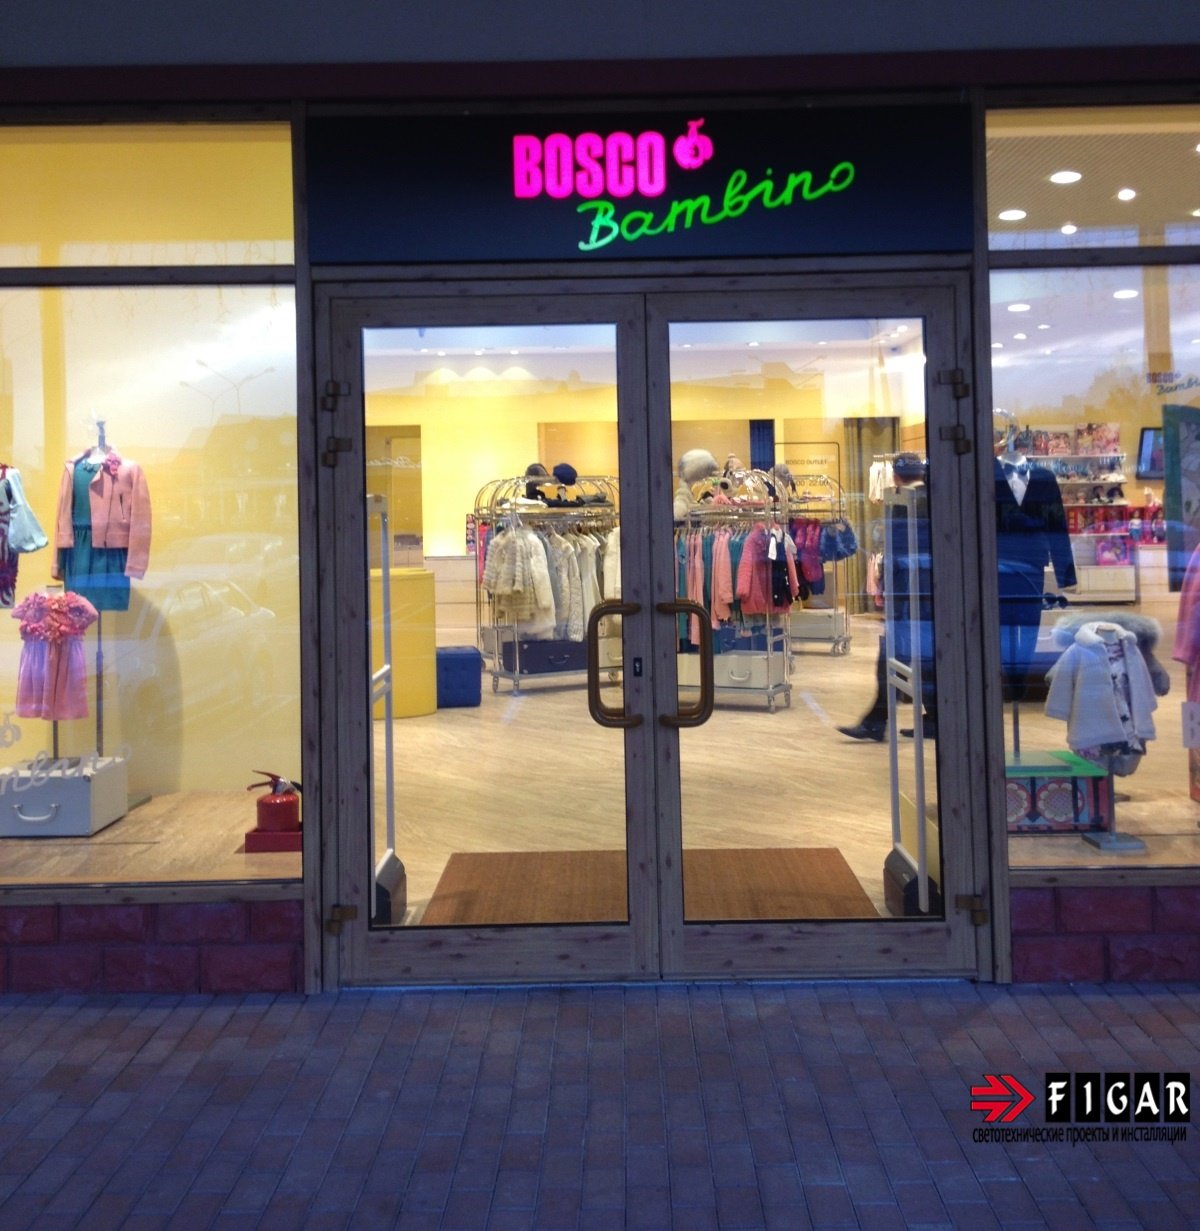 Освещение магазина люксовой детской одежды BOSCO BAMBINO